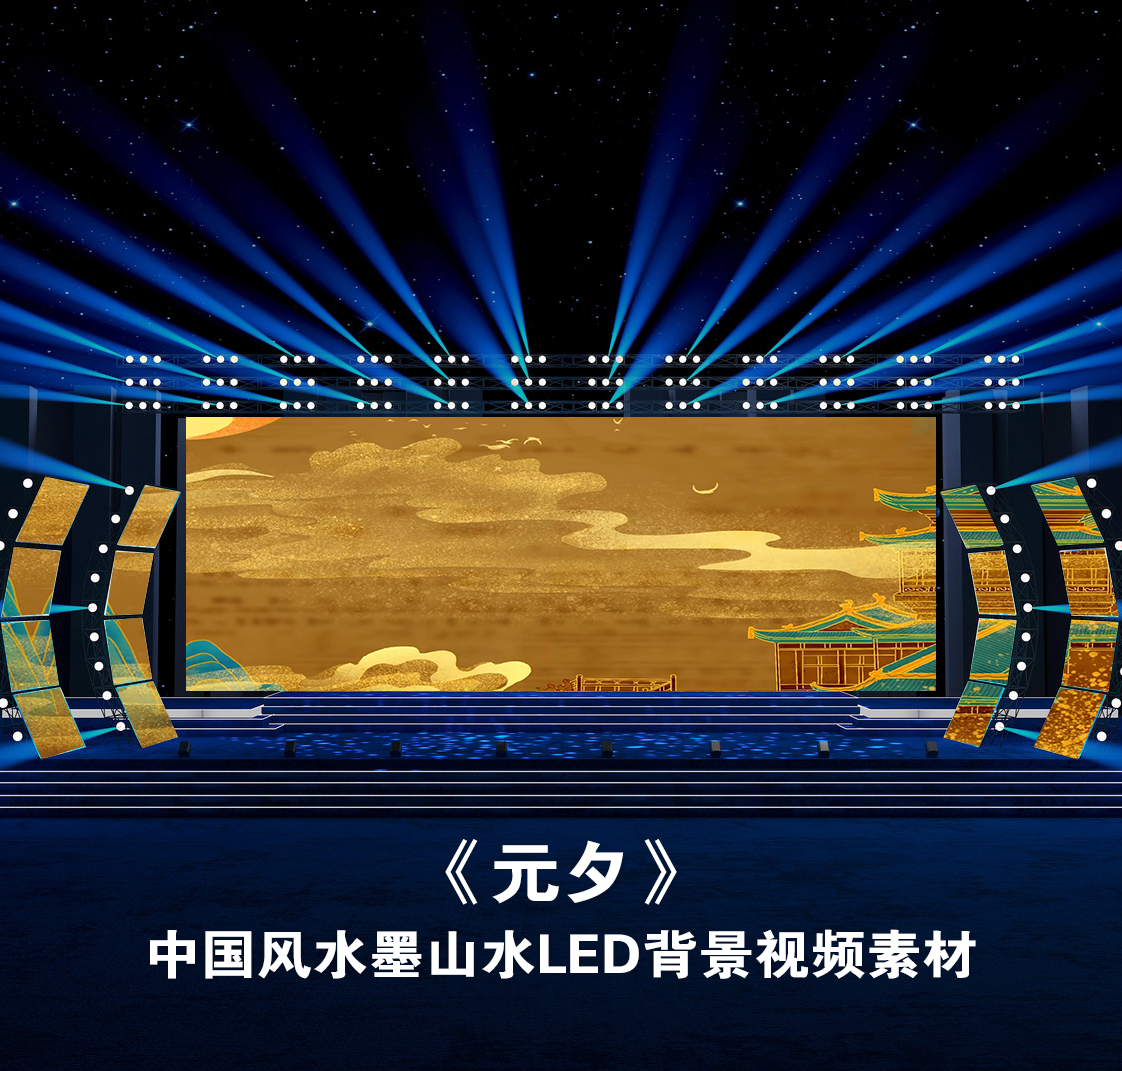 S4435《元夕》宽屏汉服秀 中国风 节目LED大屏动态背景视频素